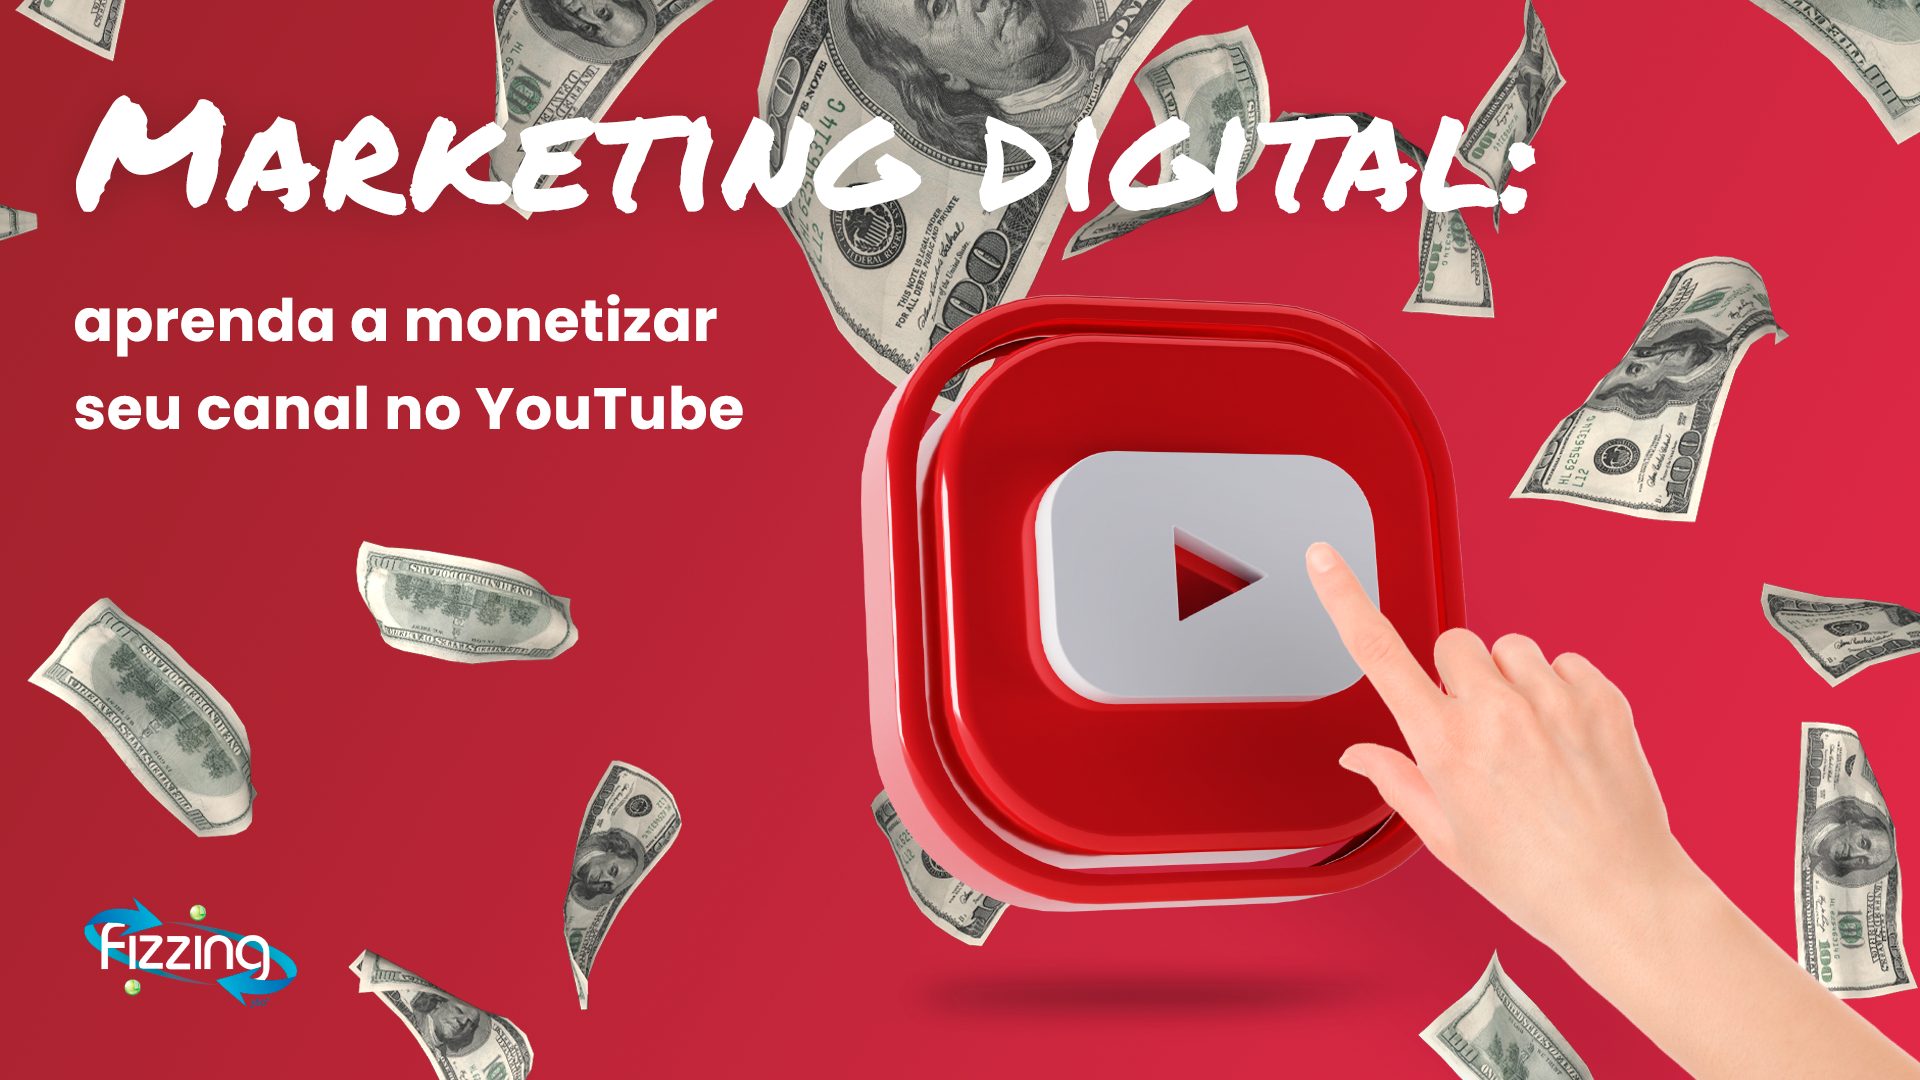 Marketing digital: aprenda a monetizar seu canal no YouTube